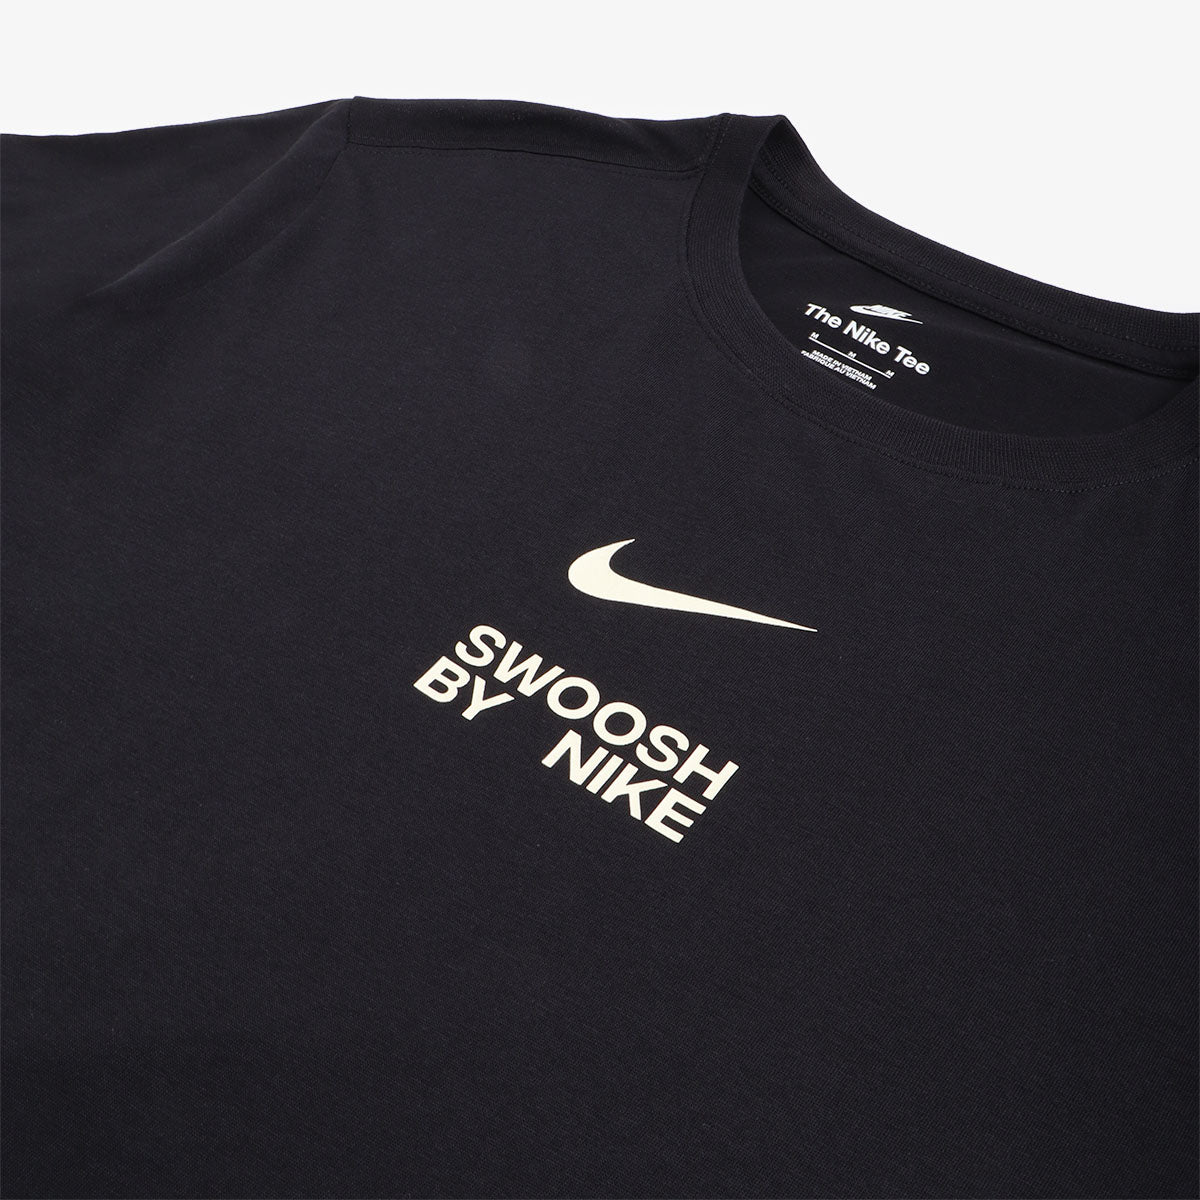 https://www.urbanindustry.co.uk/cdn/shop/files/Nike_SportswearBigSwooshT-Shirt_Black_02.jpg?v=1688463059&width=1445